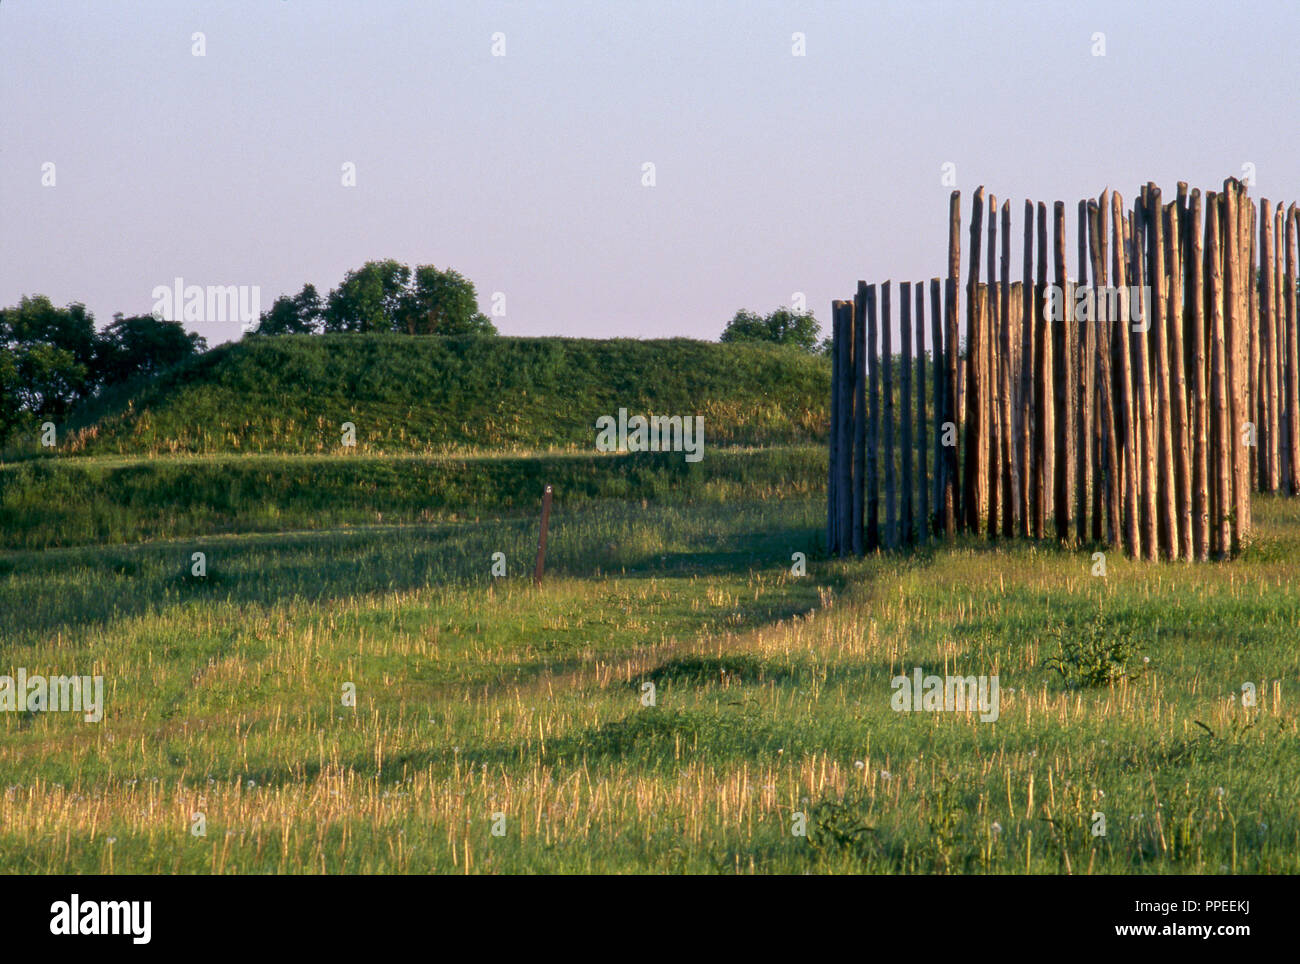 Aztalan, oriente Mississippiano Moundbuilder sitio en Wisconsin, Mound & parte de aldea stockade. Fotografía Foto de stock